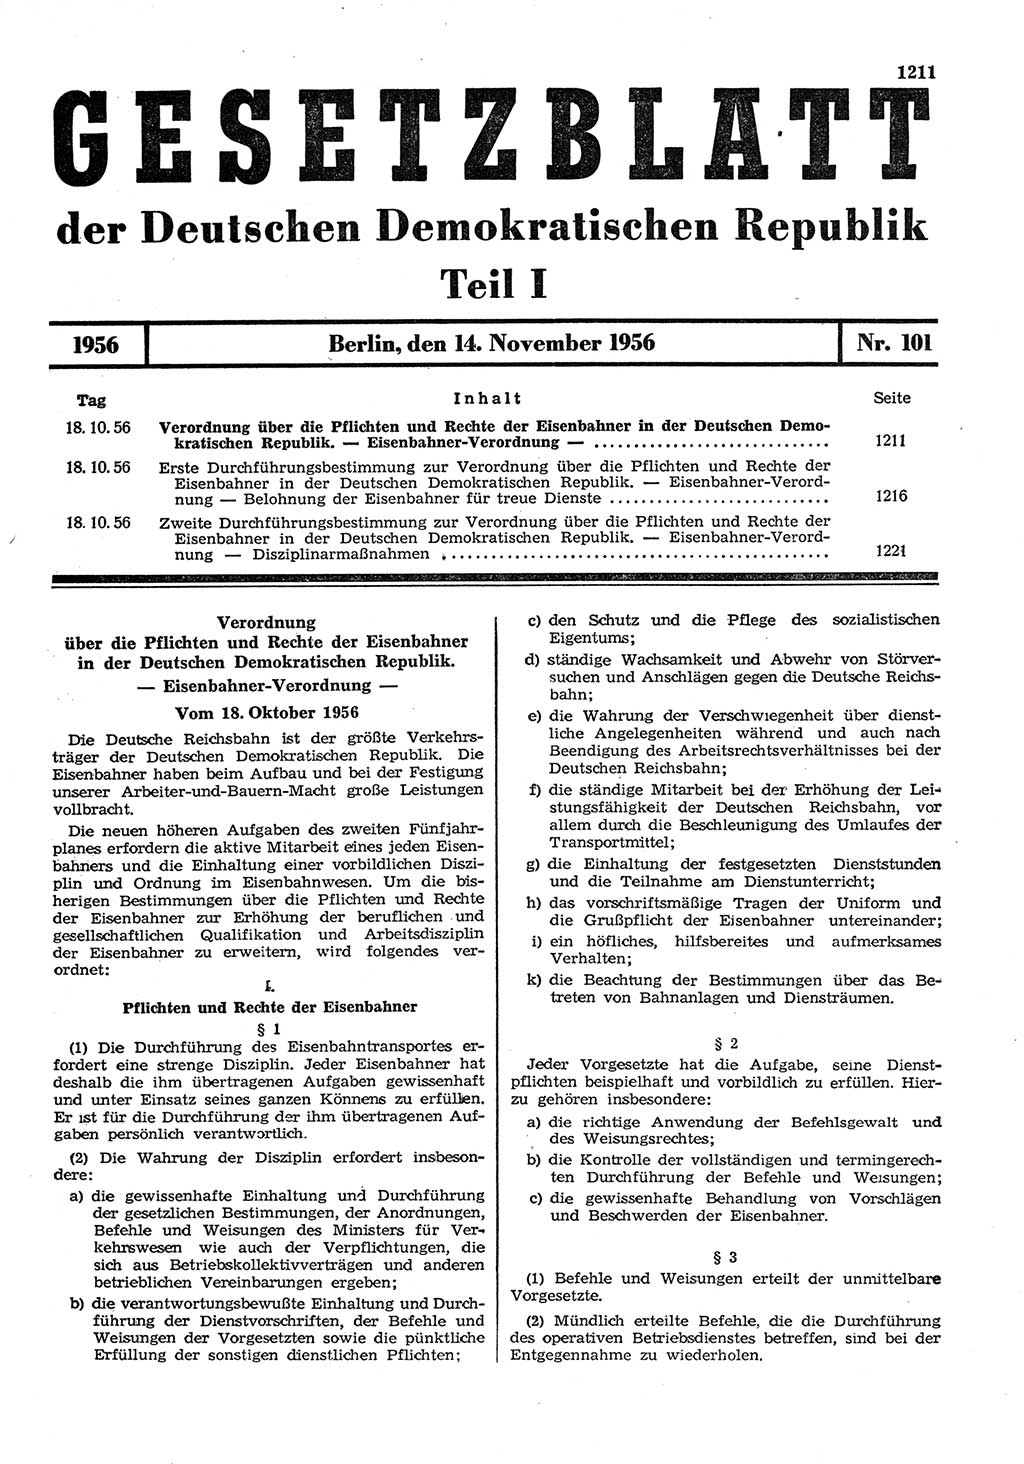 Gesetzblatt (GBl.) der Deutschen Demokratischen Republik (DDR) Teil Ⅰ 1956, Seite 1211 (GBl. DDR Ⅰ 1956, S. 1211)